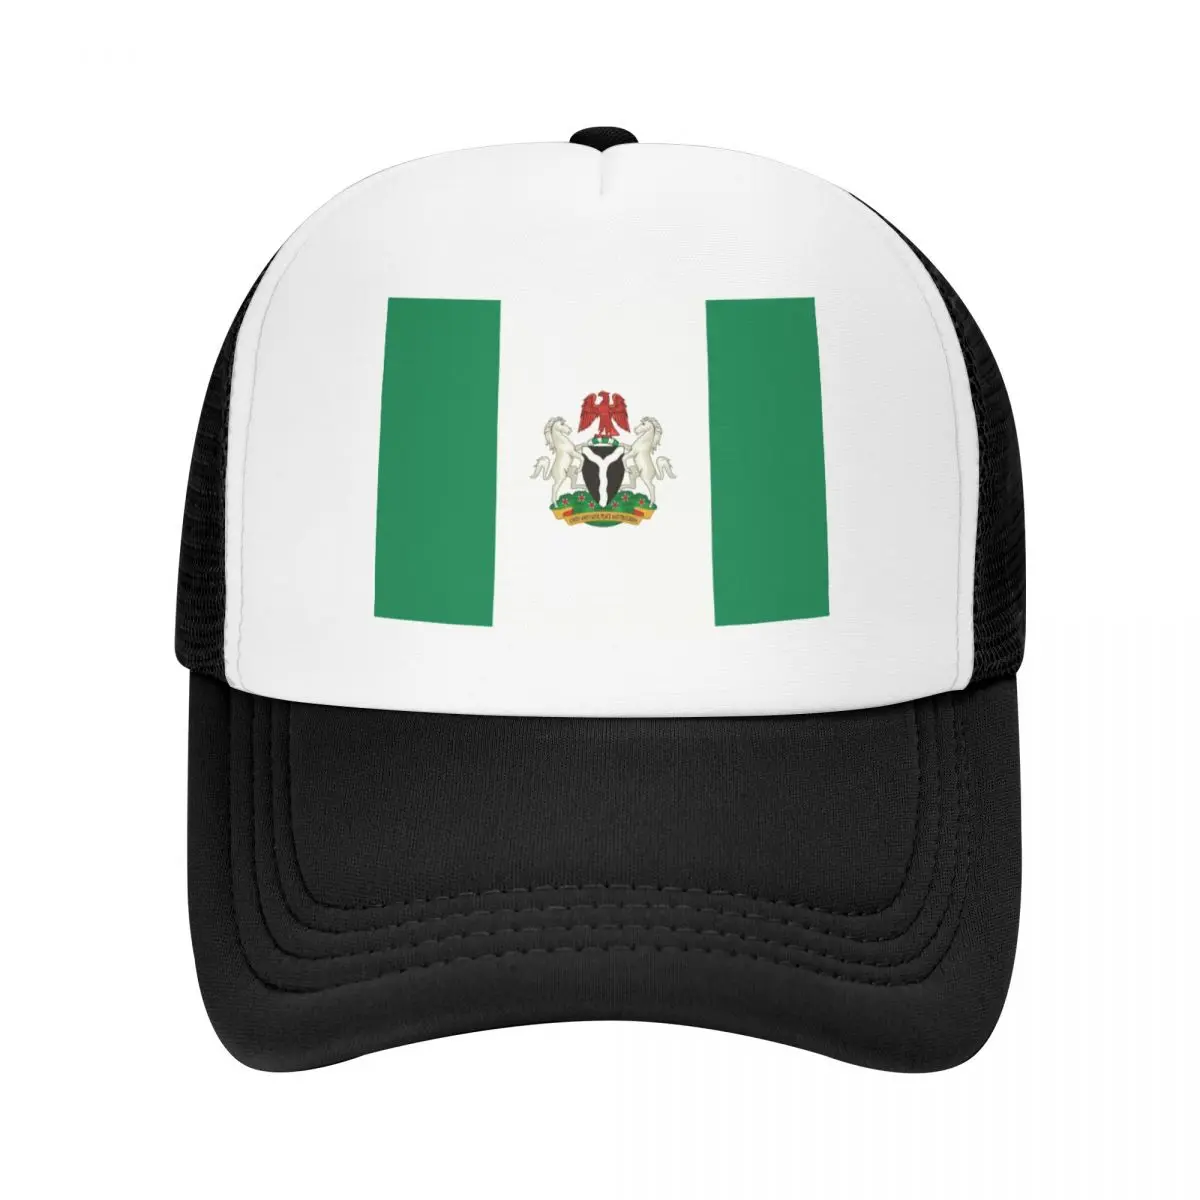 

Кепка унисекс в стиле панк с флагом Нигерии и гербом, Кепка-тракер для взрослых, регулируемая бейсболка для женщин и мужчин, спортивная